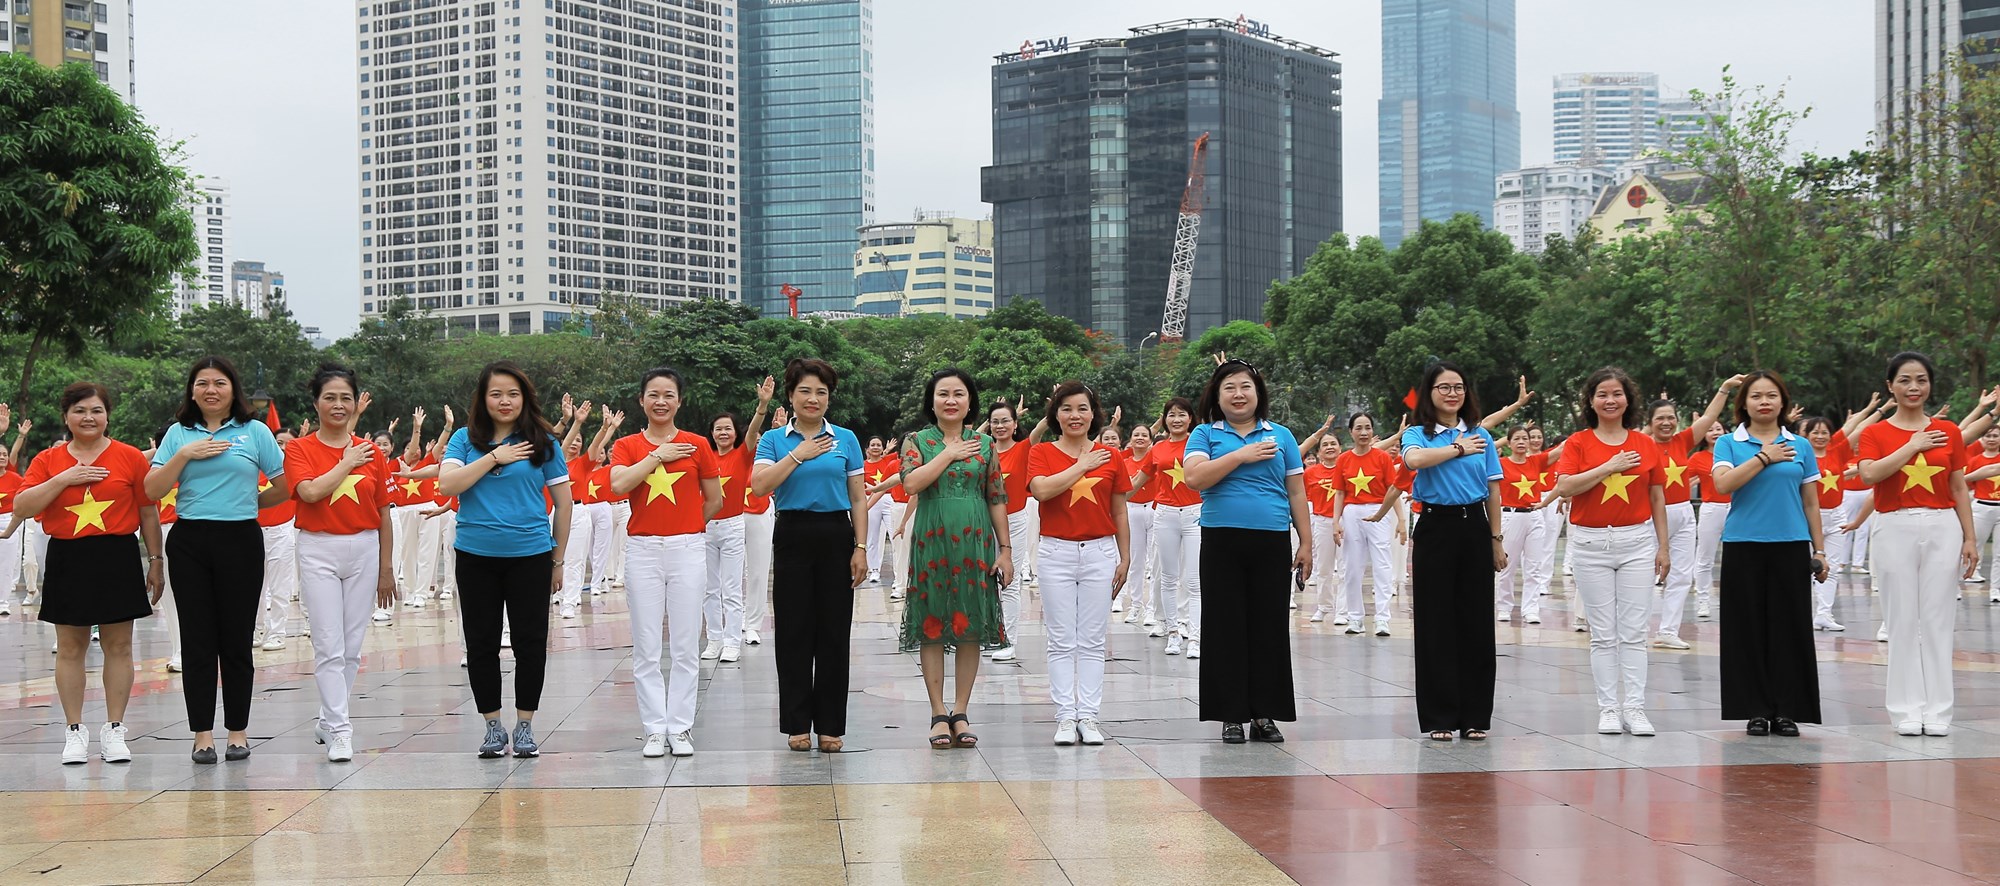 Phụ nữ Cầu Giấy rực rỡ sắc màu đồng diễn dân vũ mừng Chiến thắng Điện Biên Phủ - ảnh 1